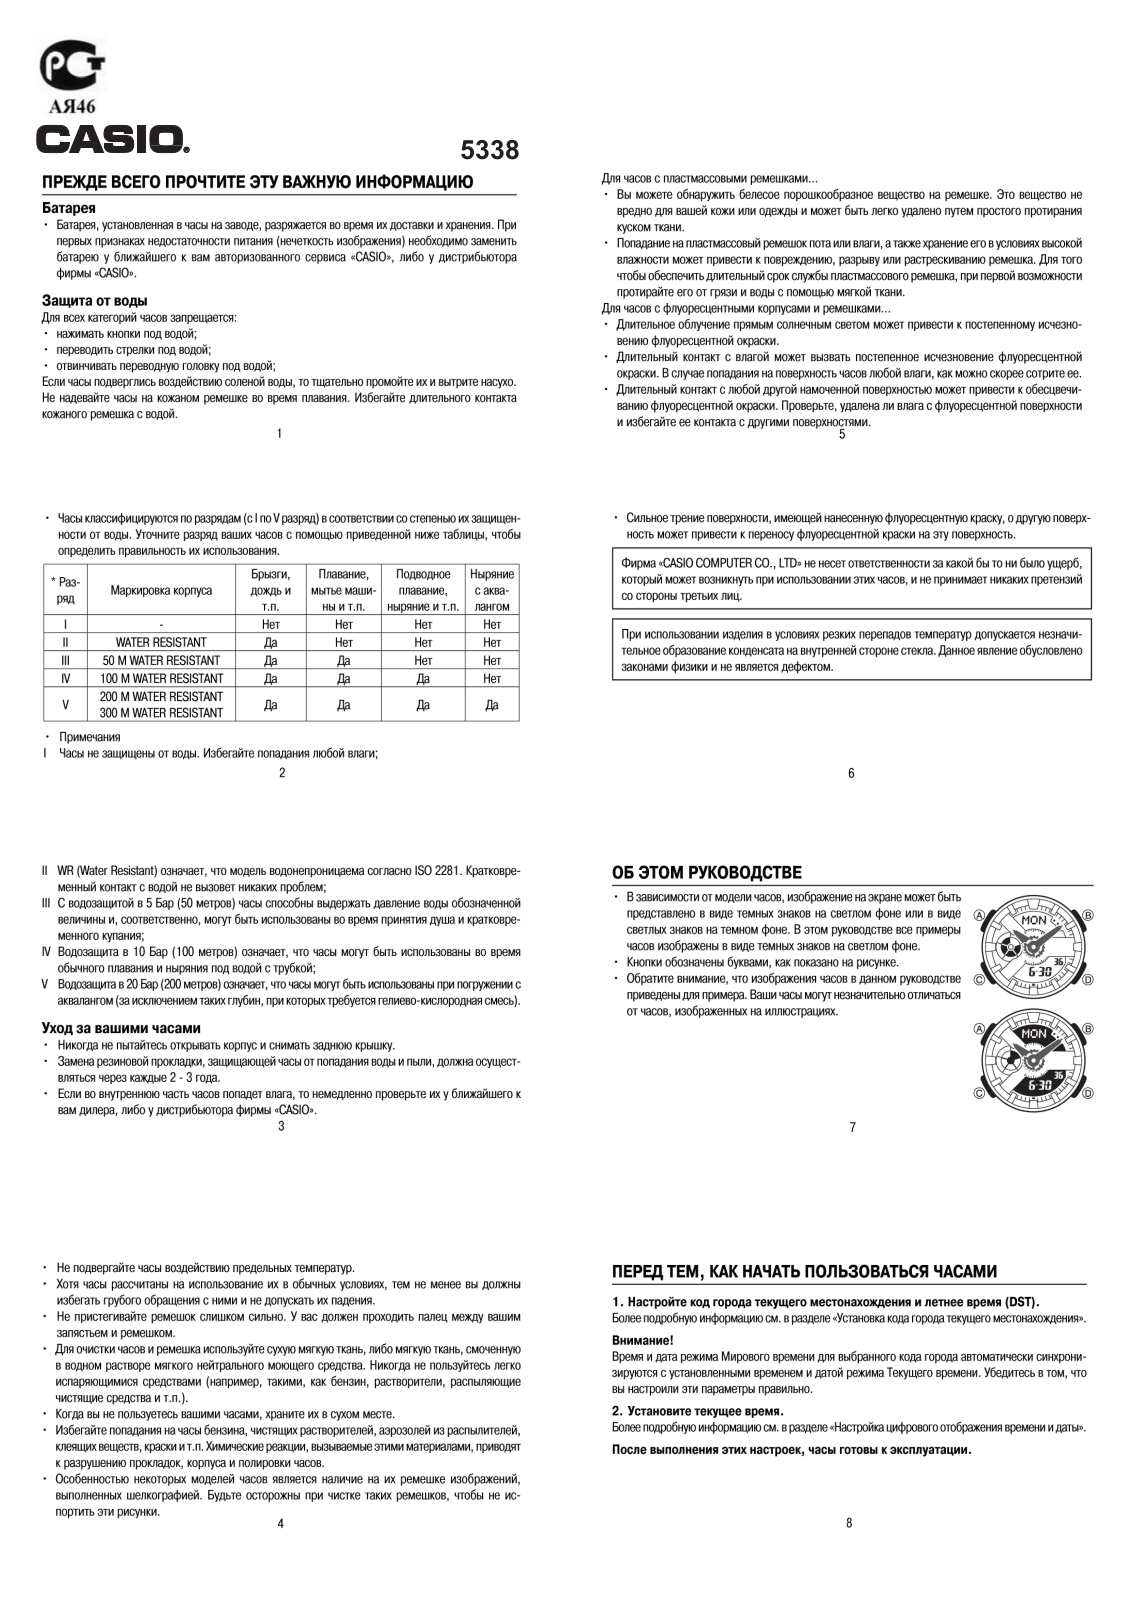 Casio BA-110-7A3 User Manual